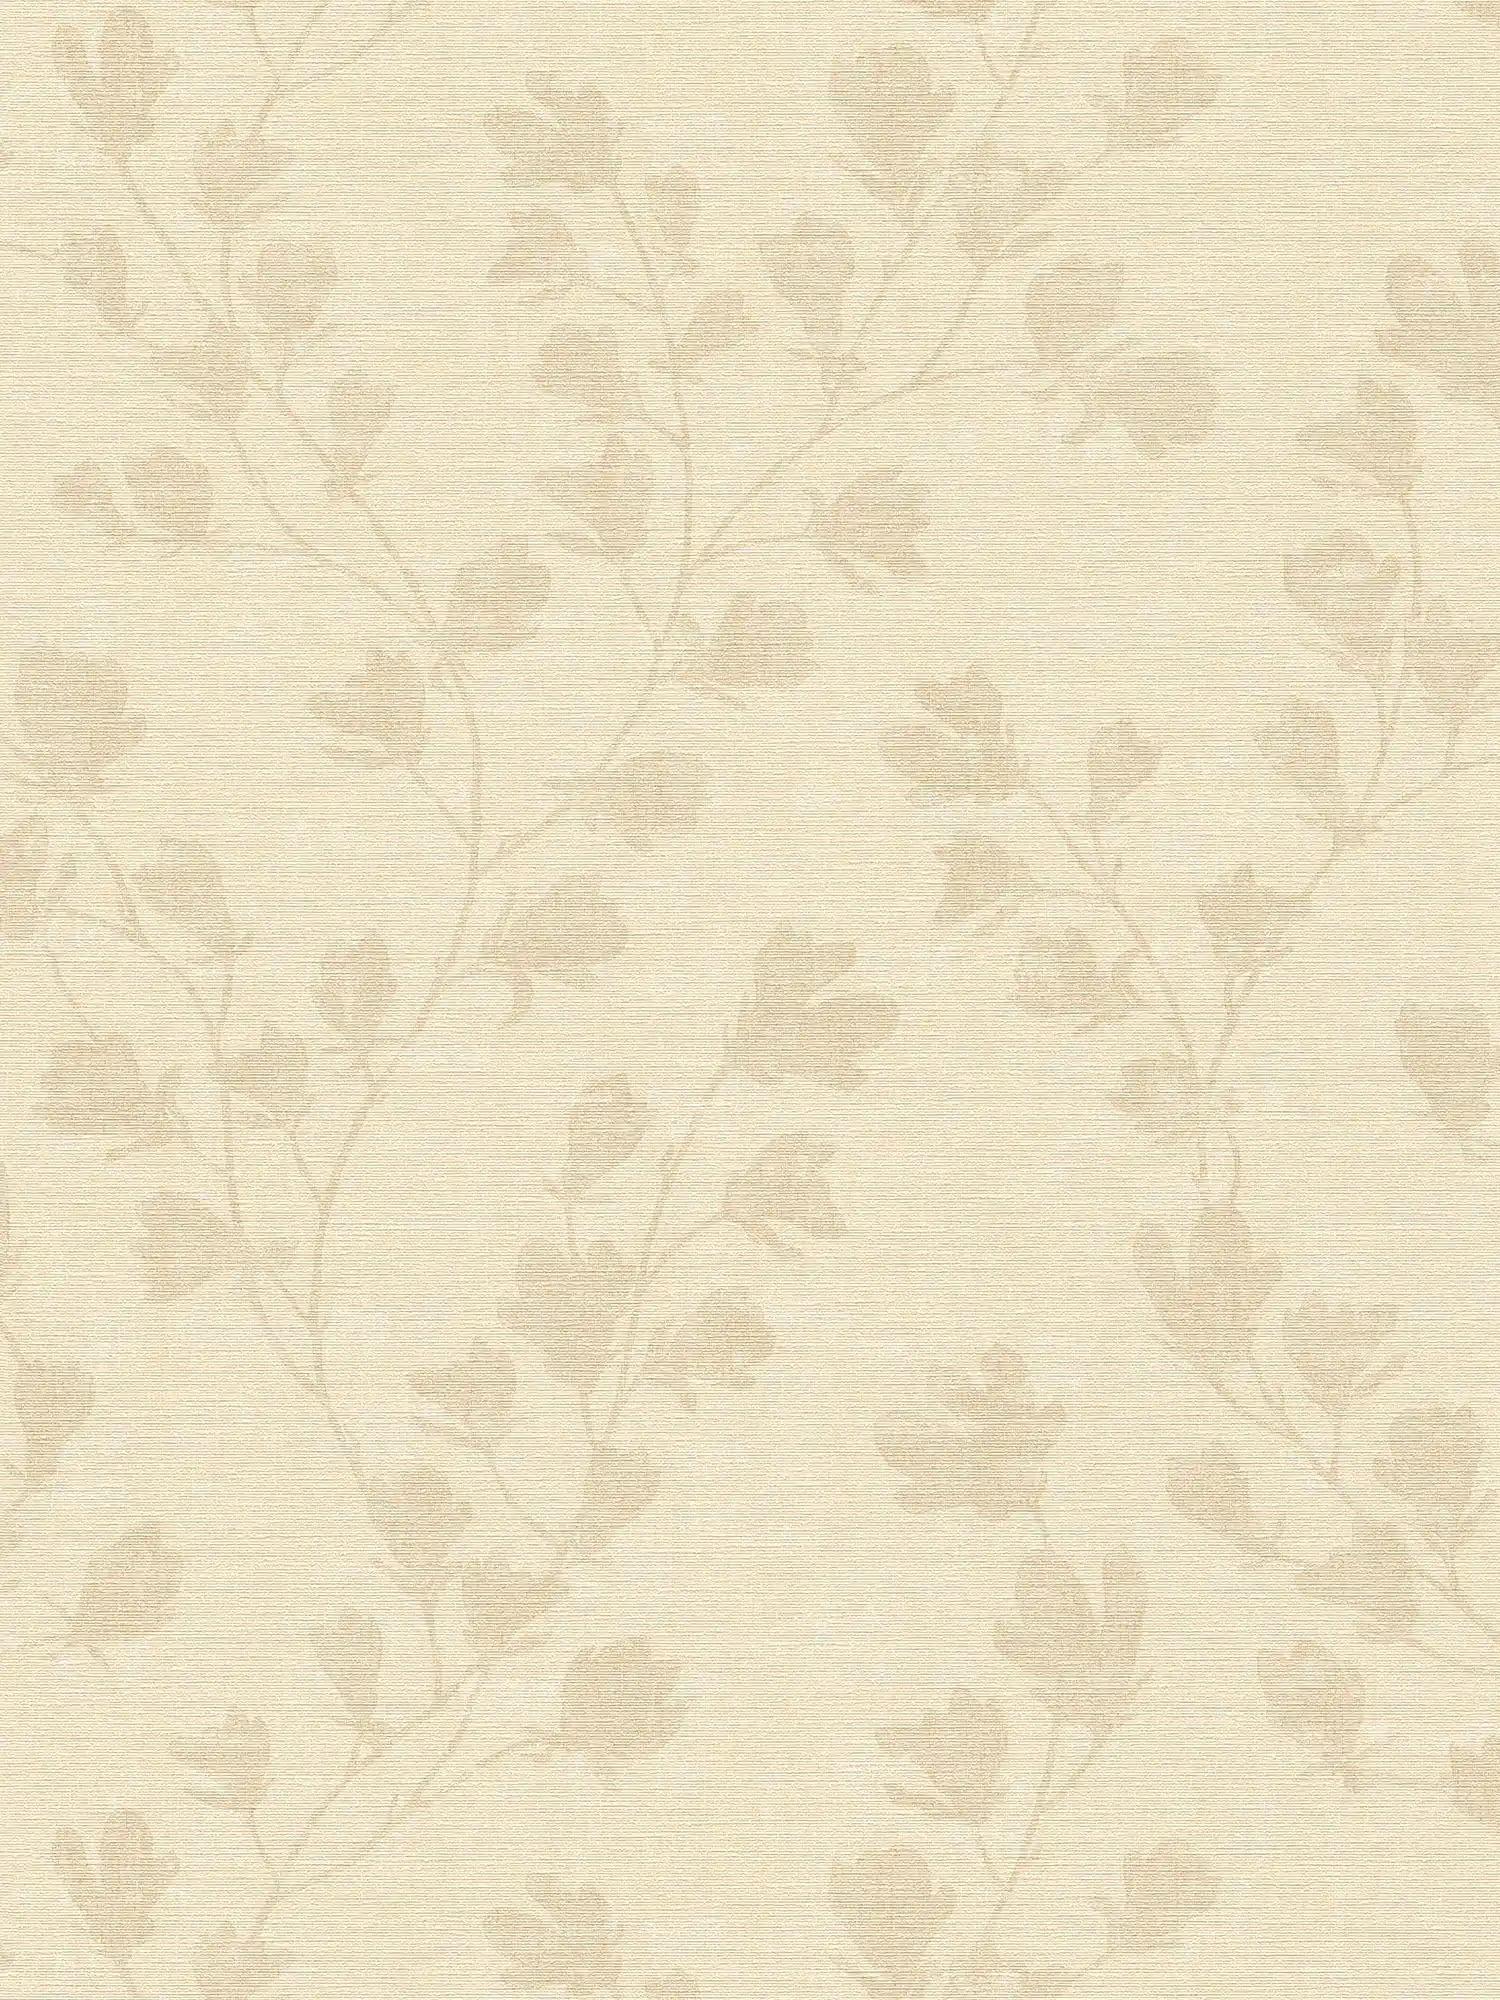 Papel pintado con estampado de hojas en estilo rústico - crema, beige
